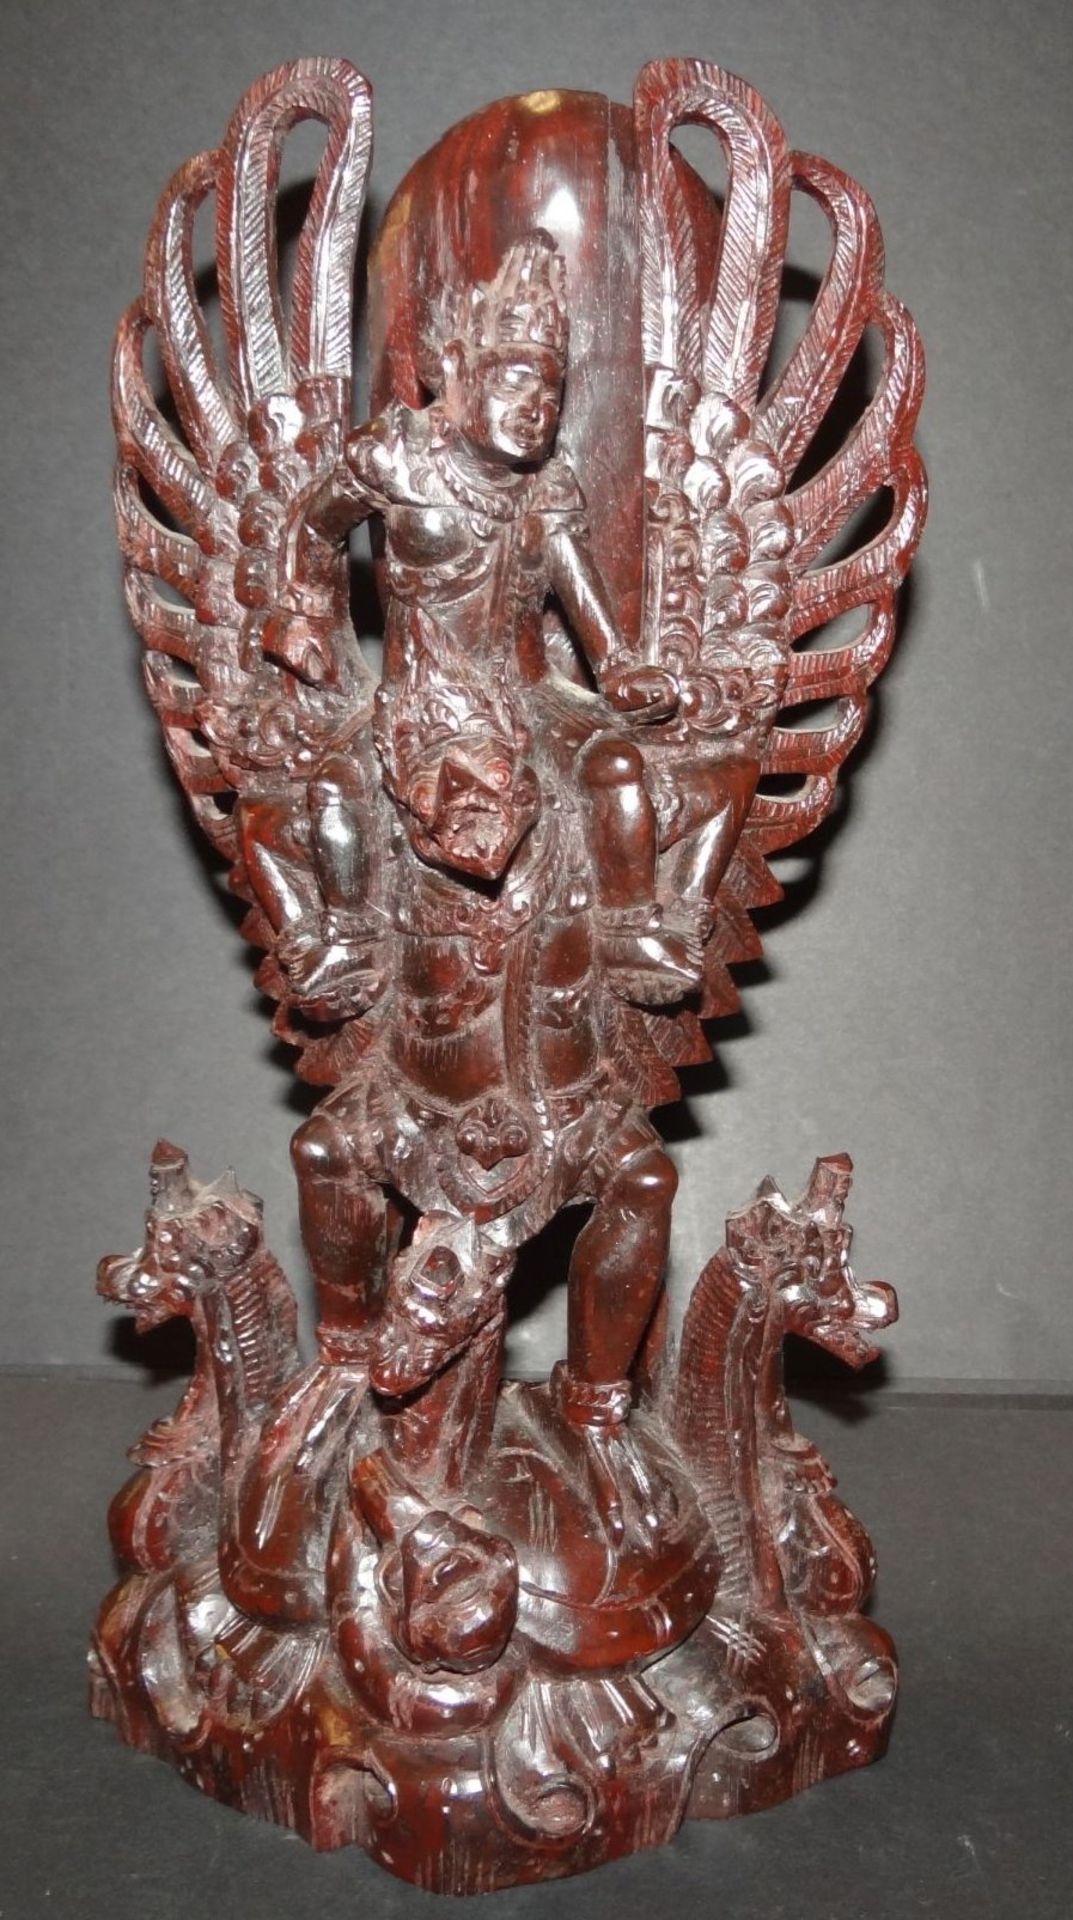 Holzschnitzerei, indon. Gottheit "Garuda" mit Drachenköpfen, H-32 cm, B-16 cm, ält